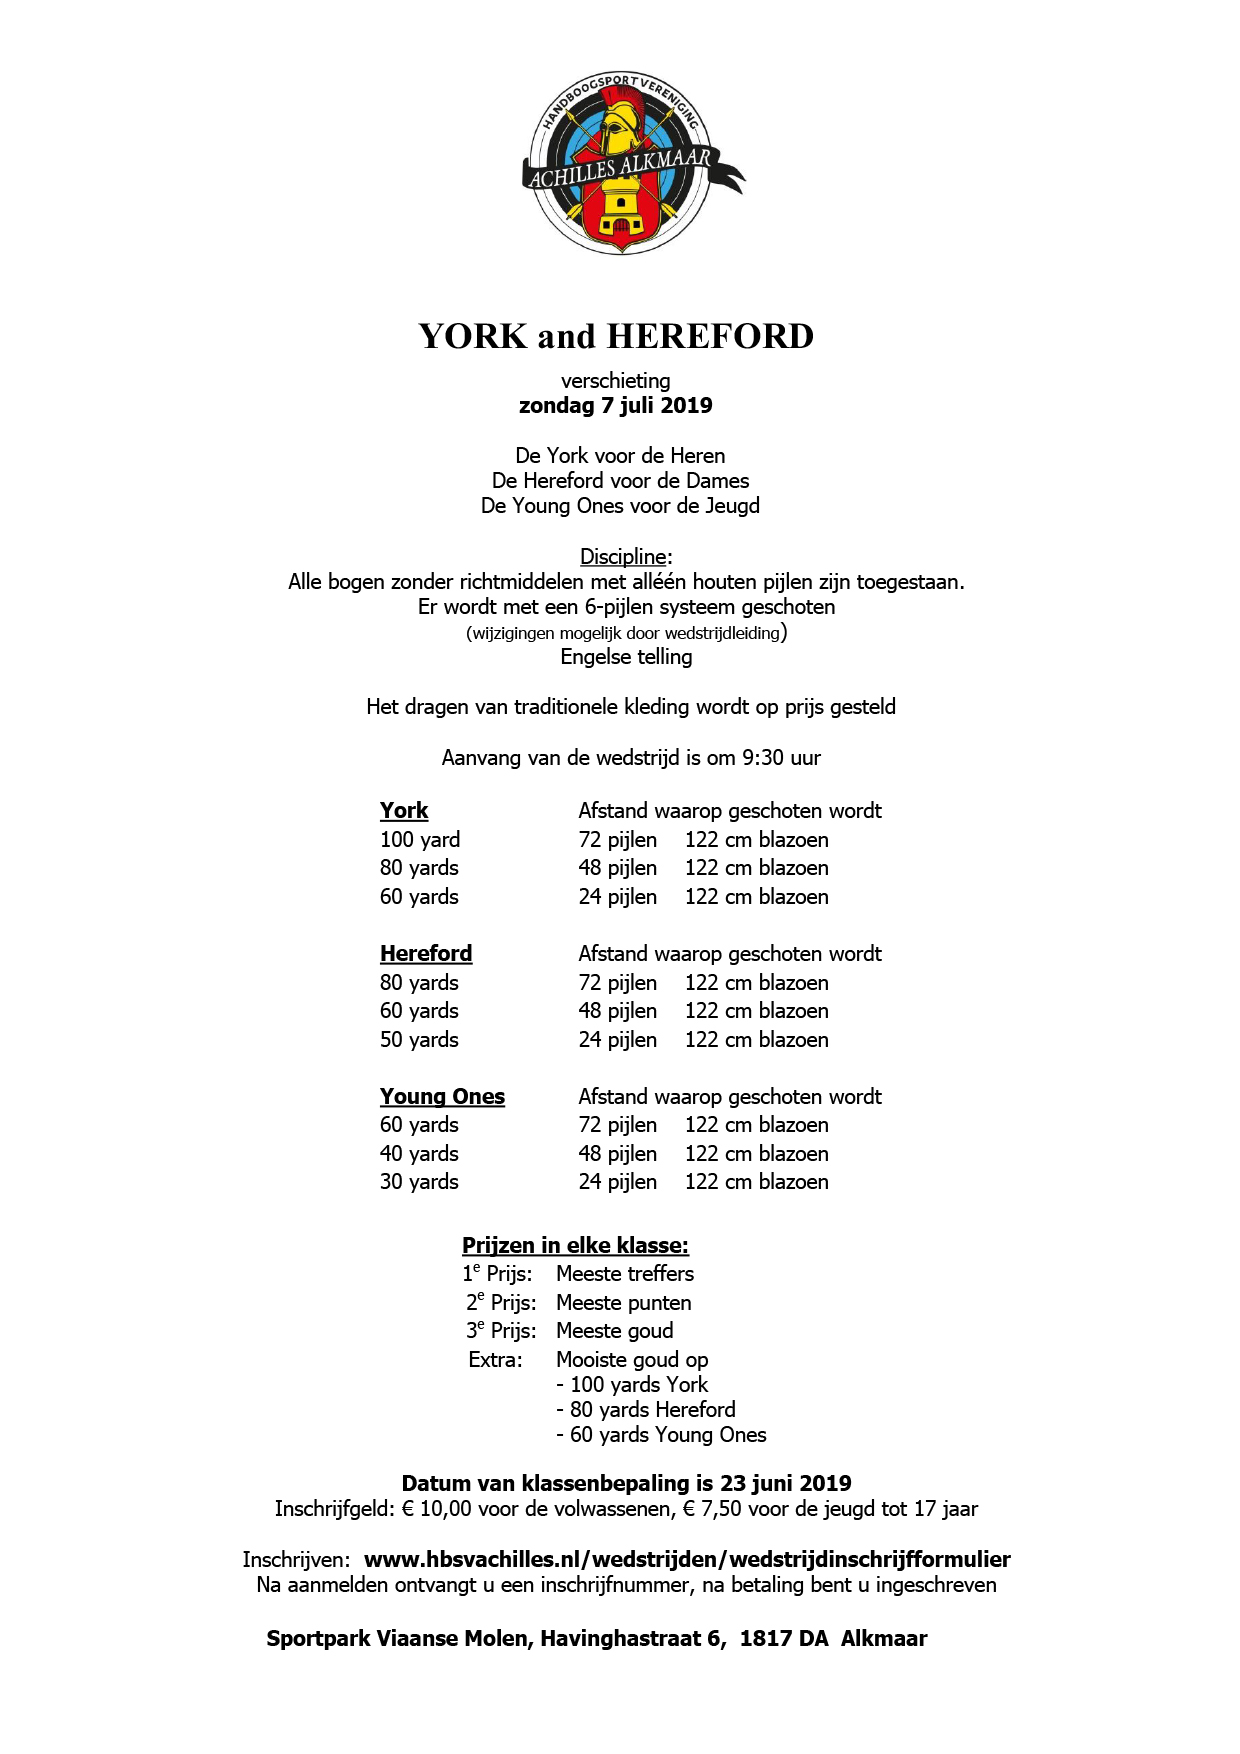 York en Hereford verschieting @ Sportpark Viaanse Molen